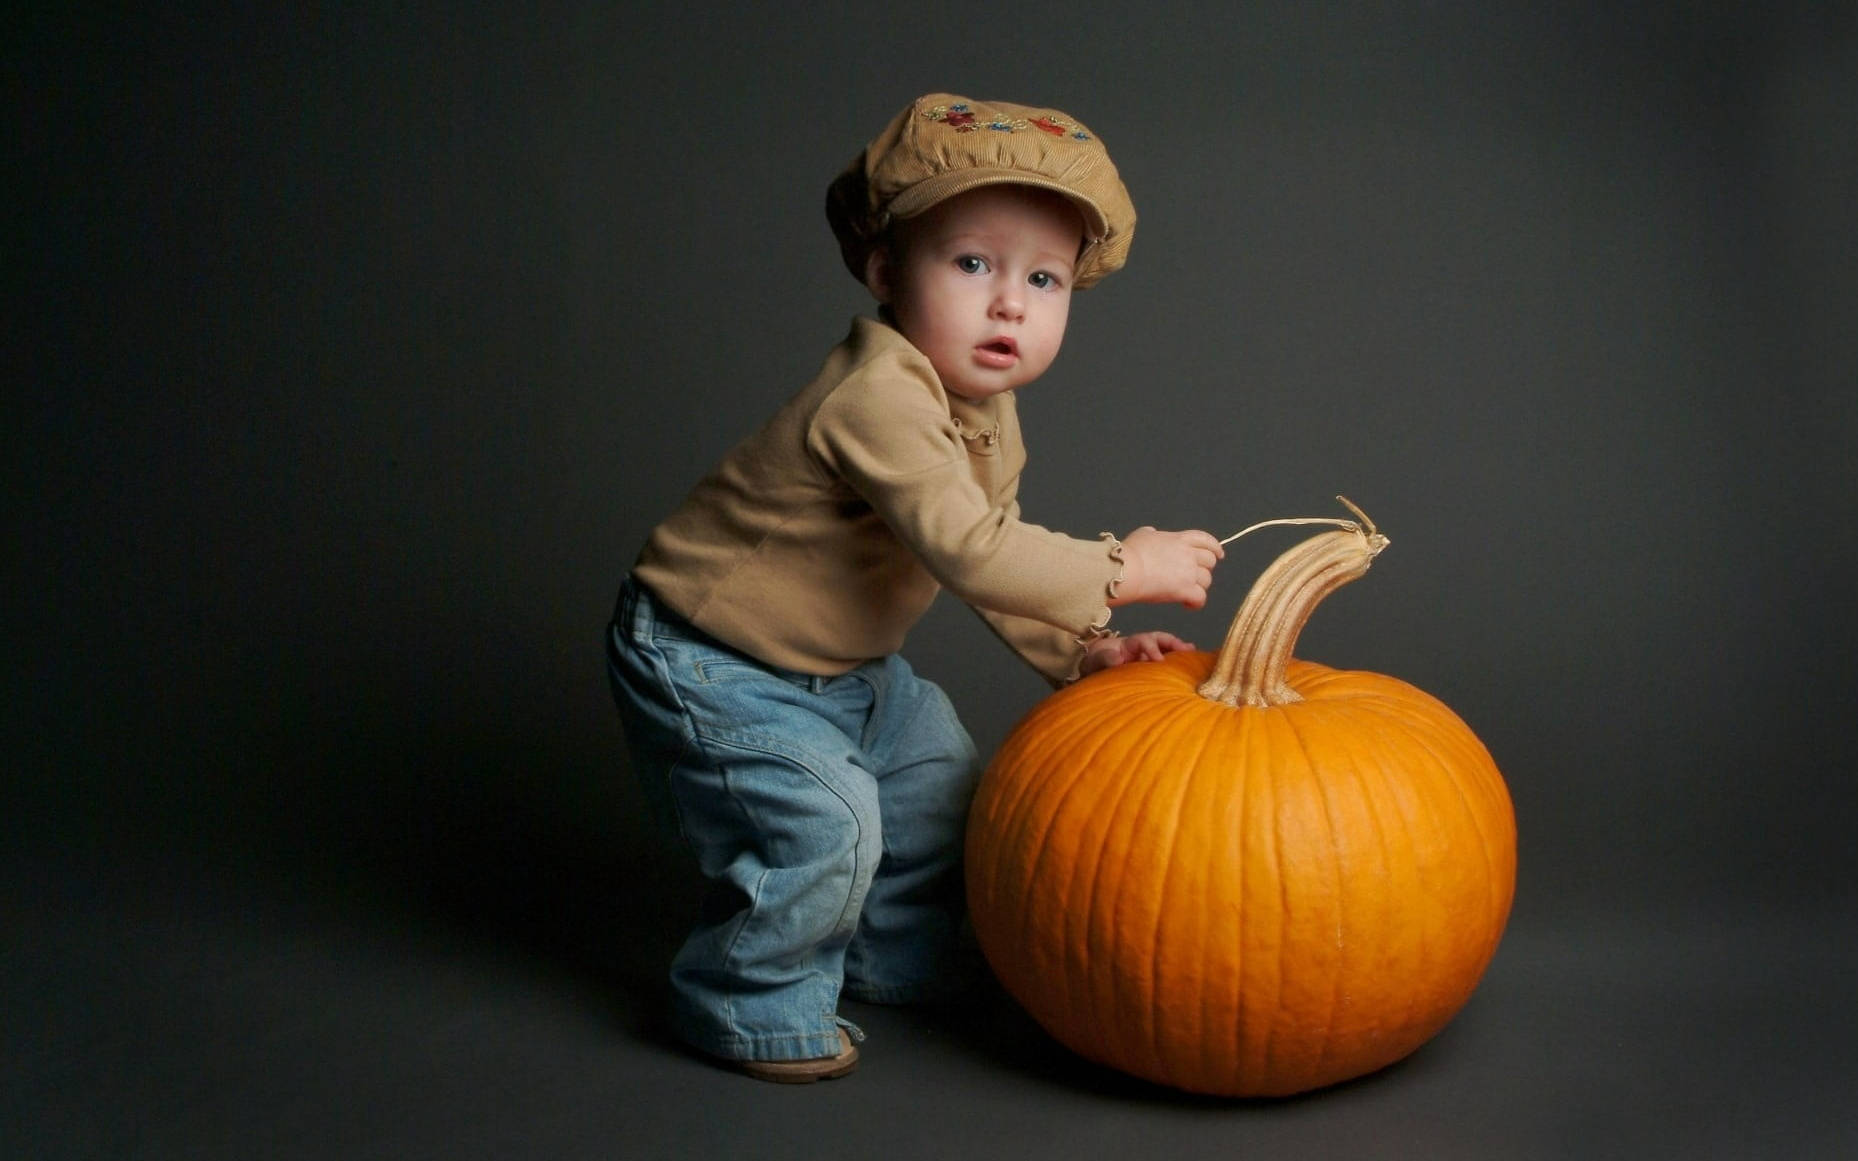 Cute Halloween Toddler Over Pumpkin Wallpaper